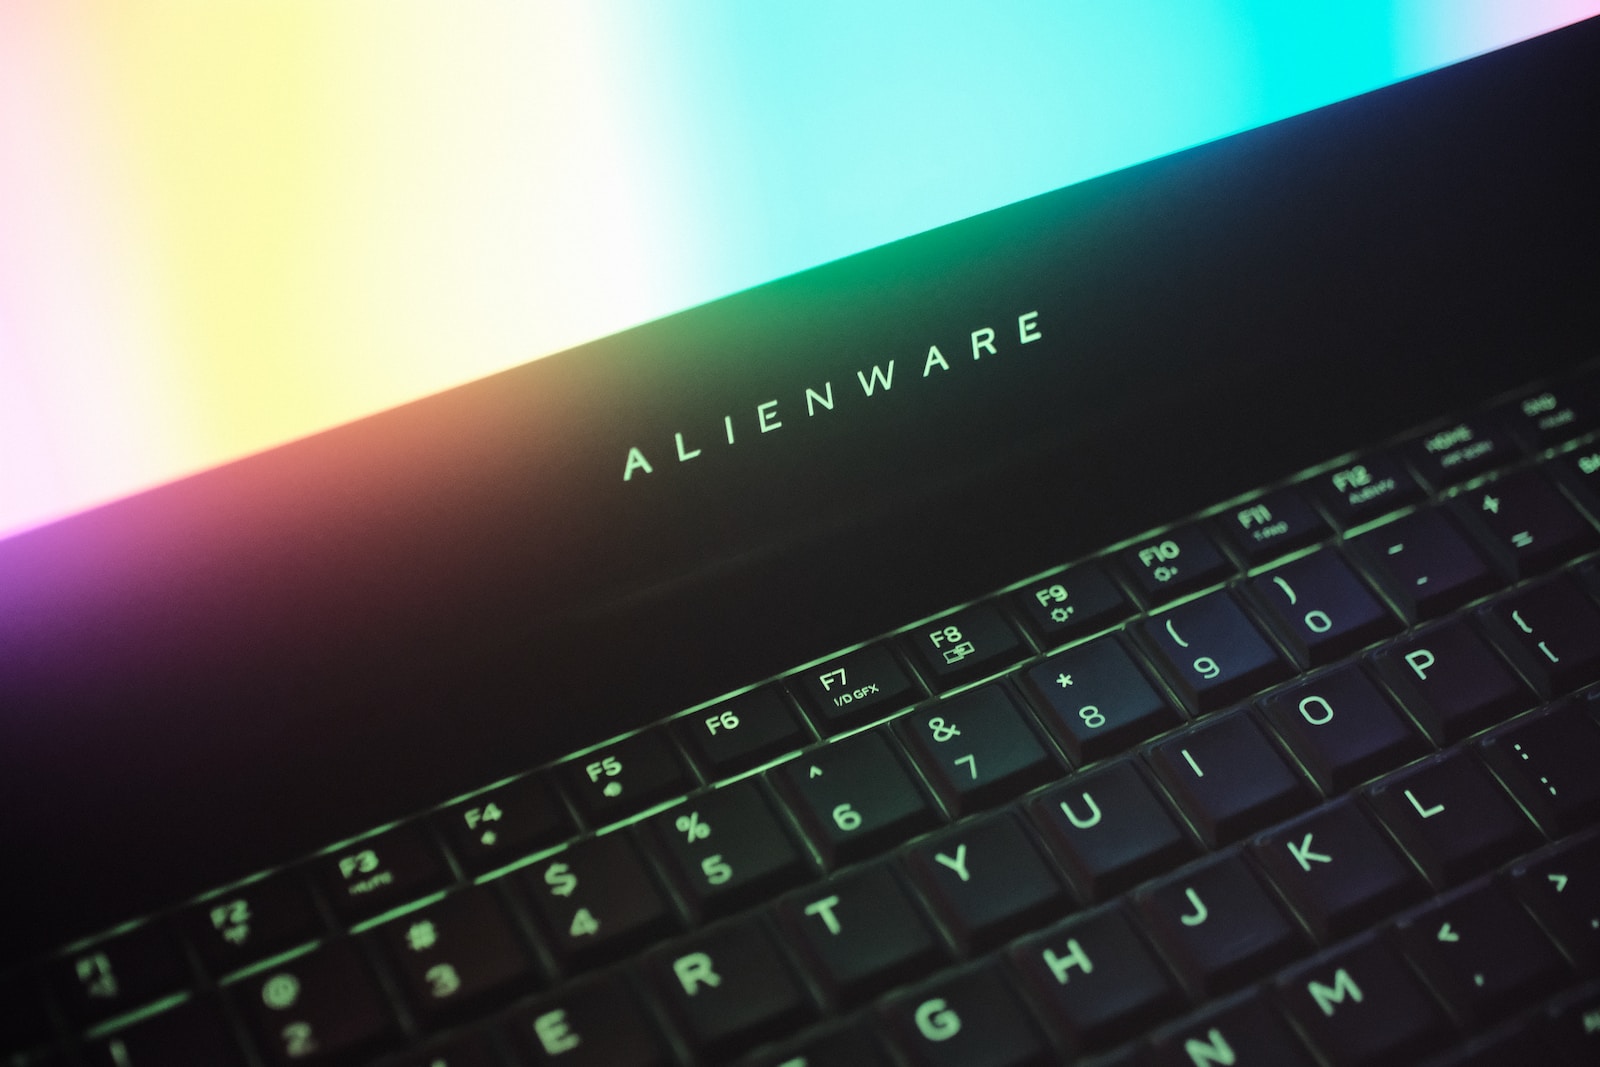 Alienware: Co to jest i dlaczego jest popularny wśród graczy?